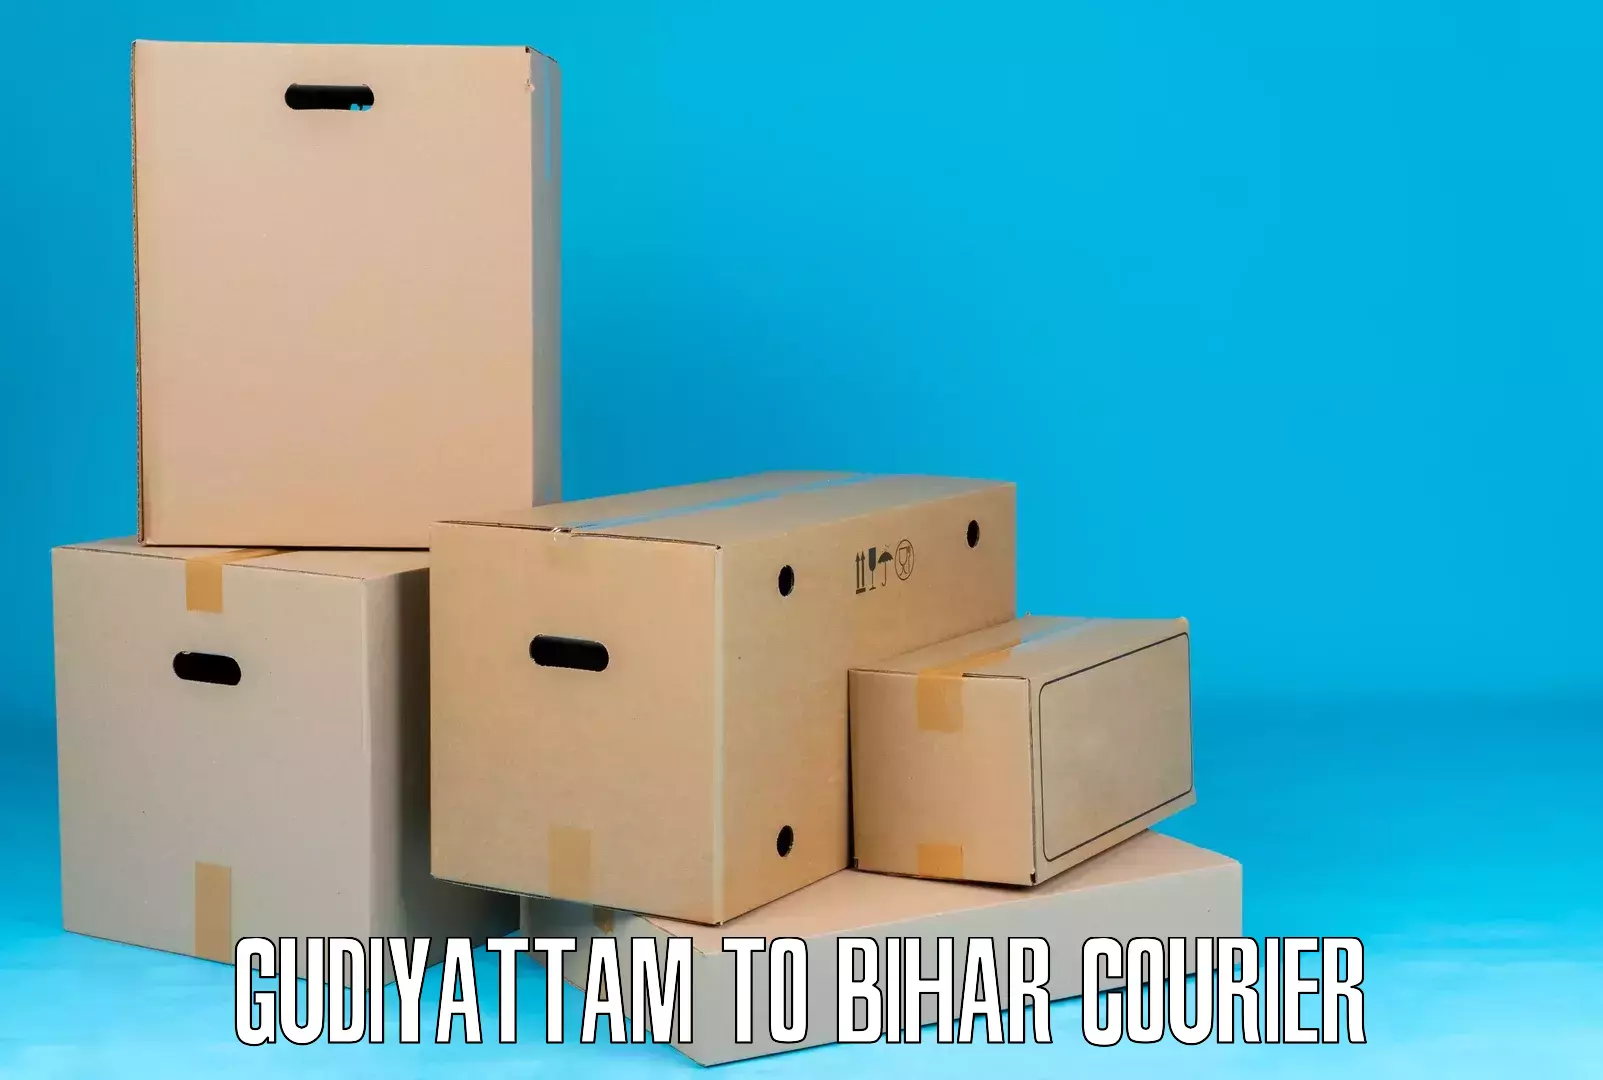 Customized shipping options Gudiyattam to Bhagalpur